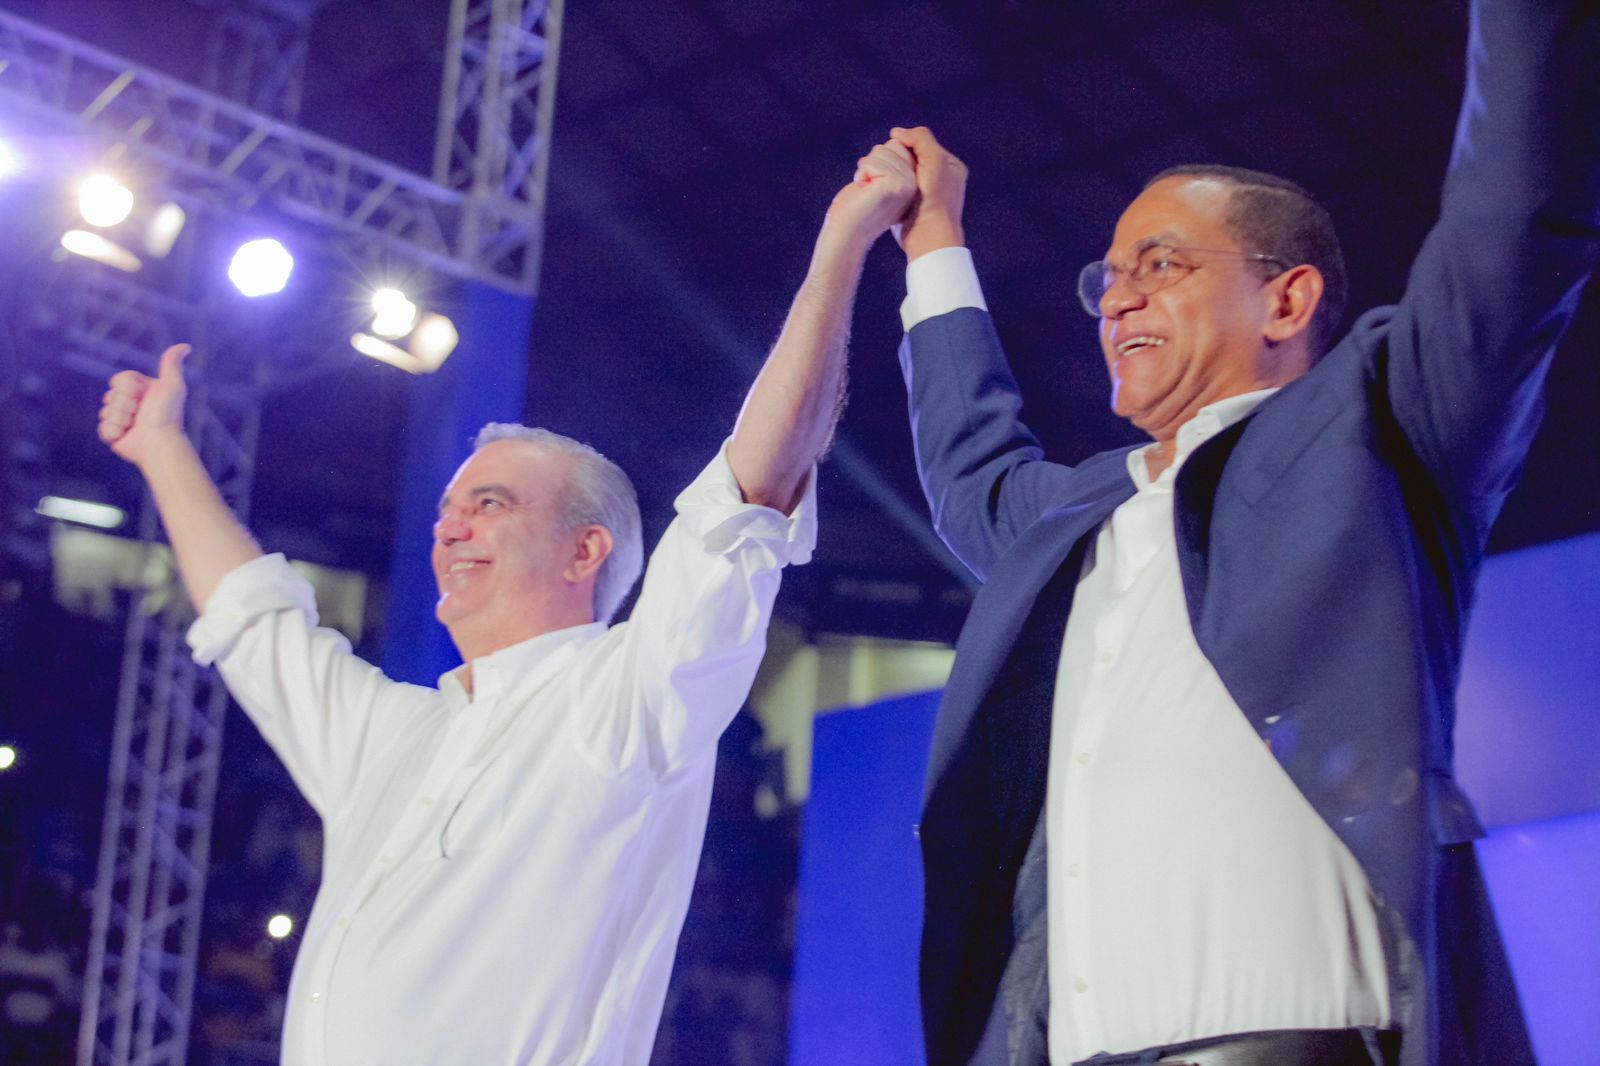 Justicia Social y PRM sellan alianza para “profundizar el cambio” con Luis Abinader como candidato